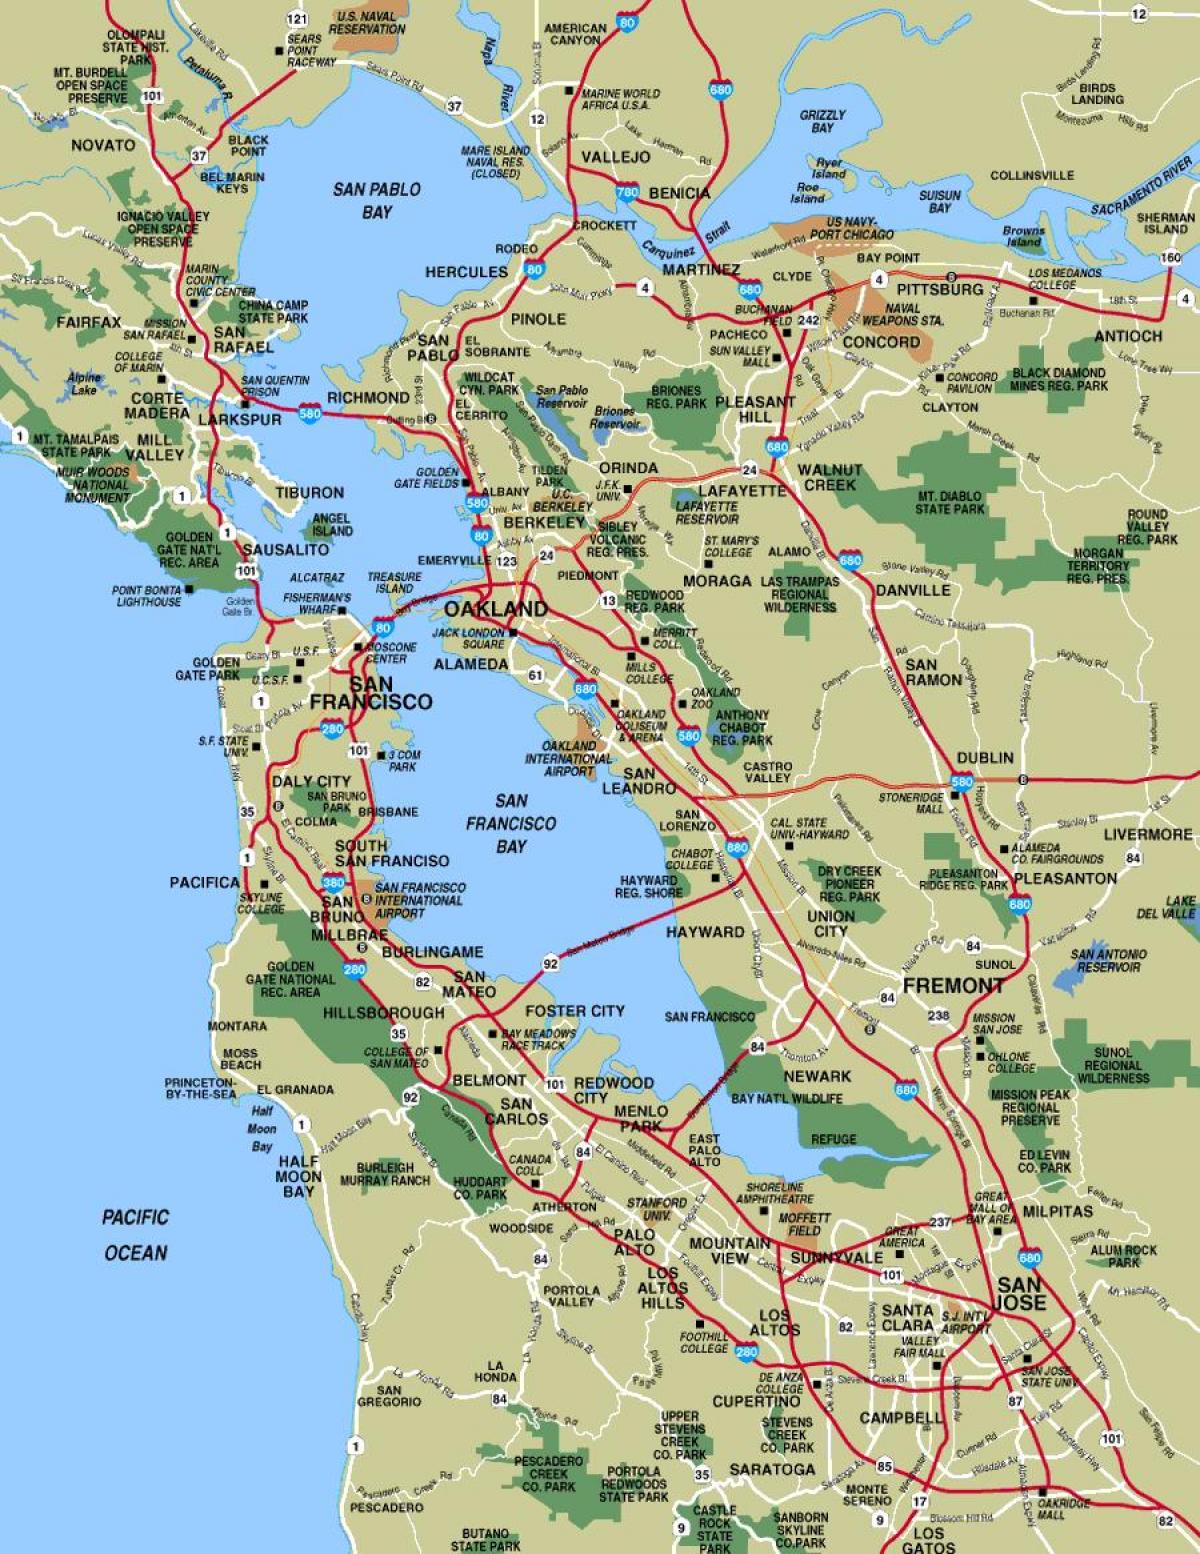 מפה של איזור סן פרנסיסקו ערים